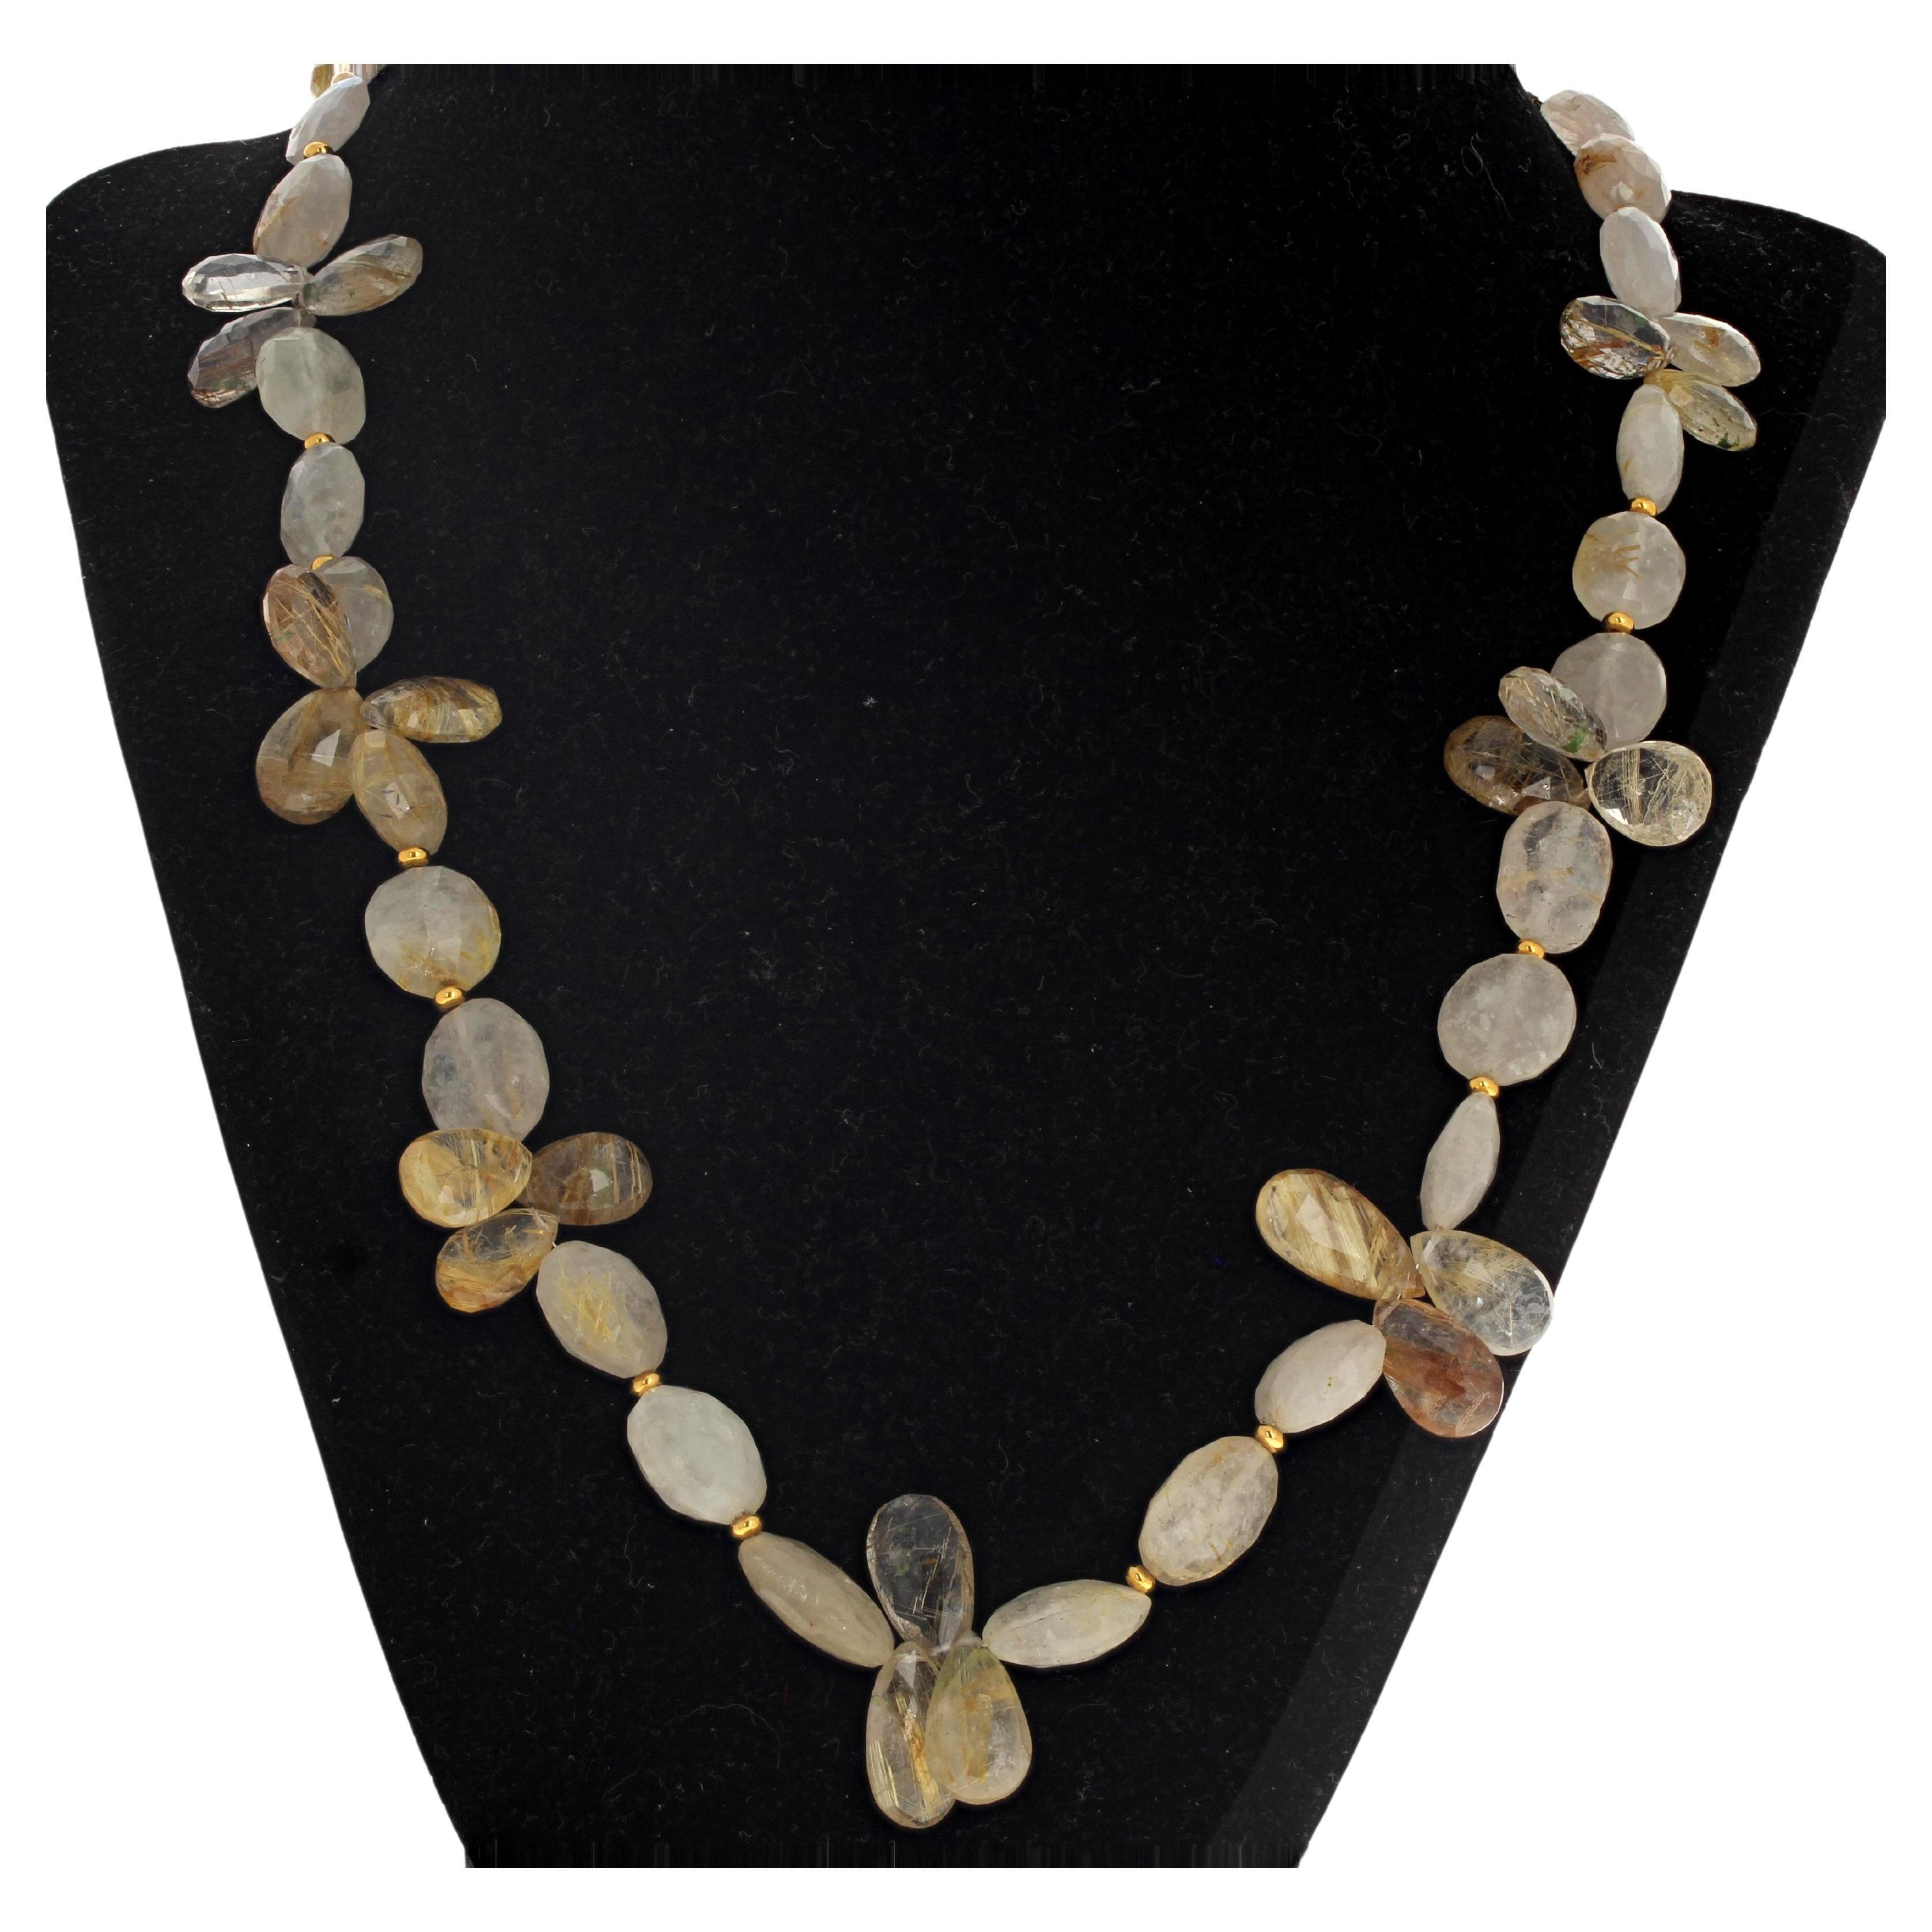 Diese schöne 21 Zoll lange Halskette aus natürlichem, goldfarbenem Rutilquarz ist mit kleinen vergoldeten, funkelnden Perlen verziert.  Diese natürlichen Quarze sind etwa 13 mm x 12 mm groß.  Der Verschluss ist ein vergoldeter, leicht zu bedienender